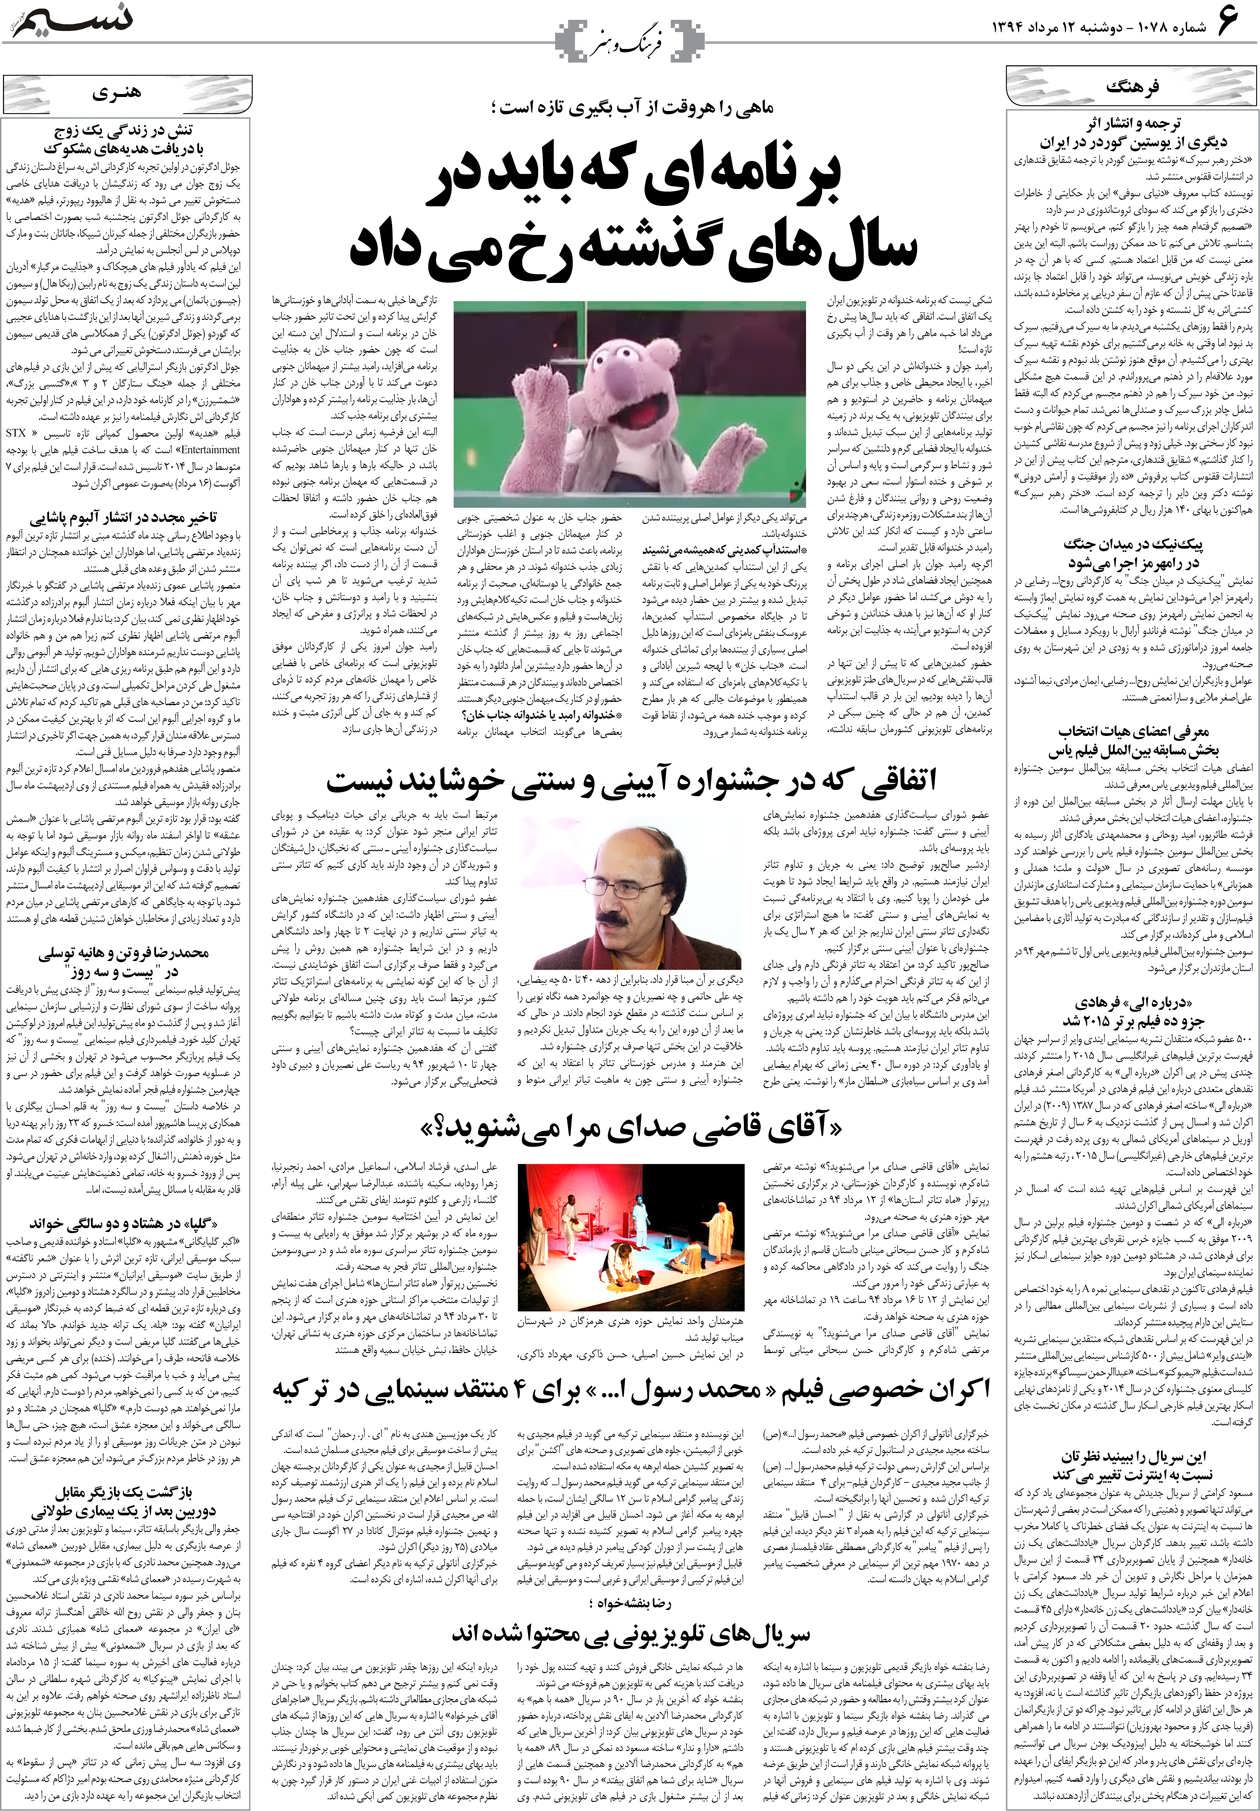 صفحه فرهنگ و هنر روزنامه نسیم شماره 1078